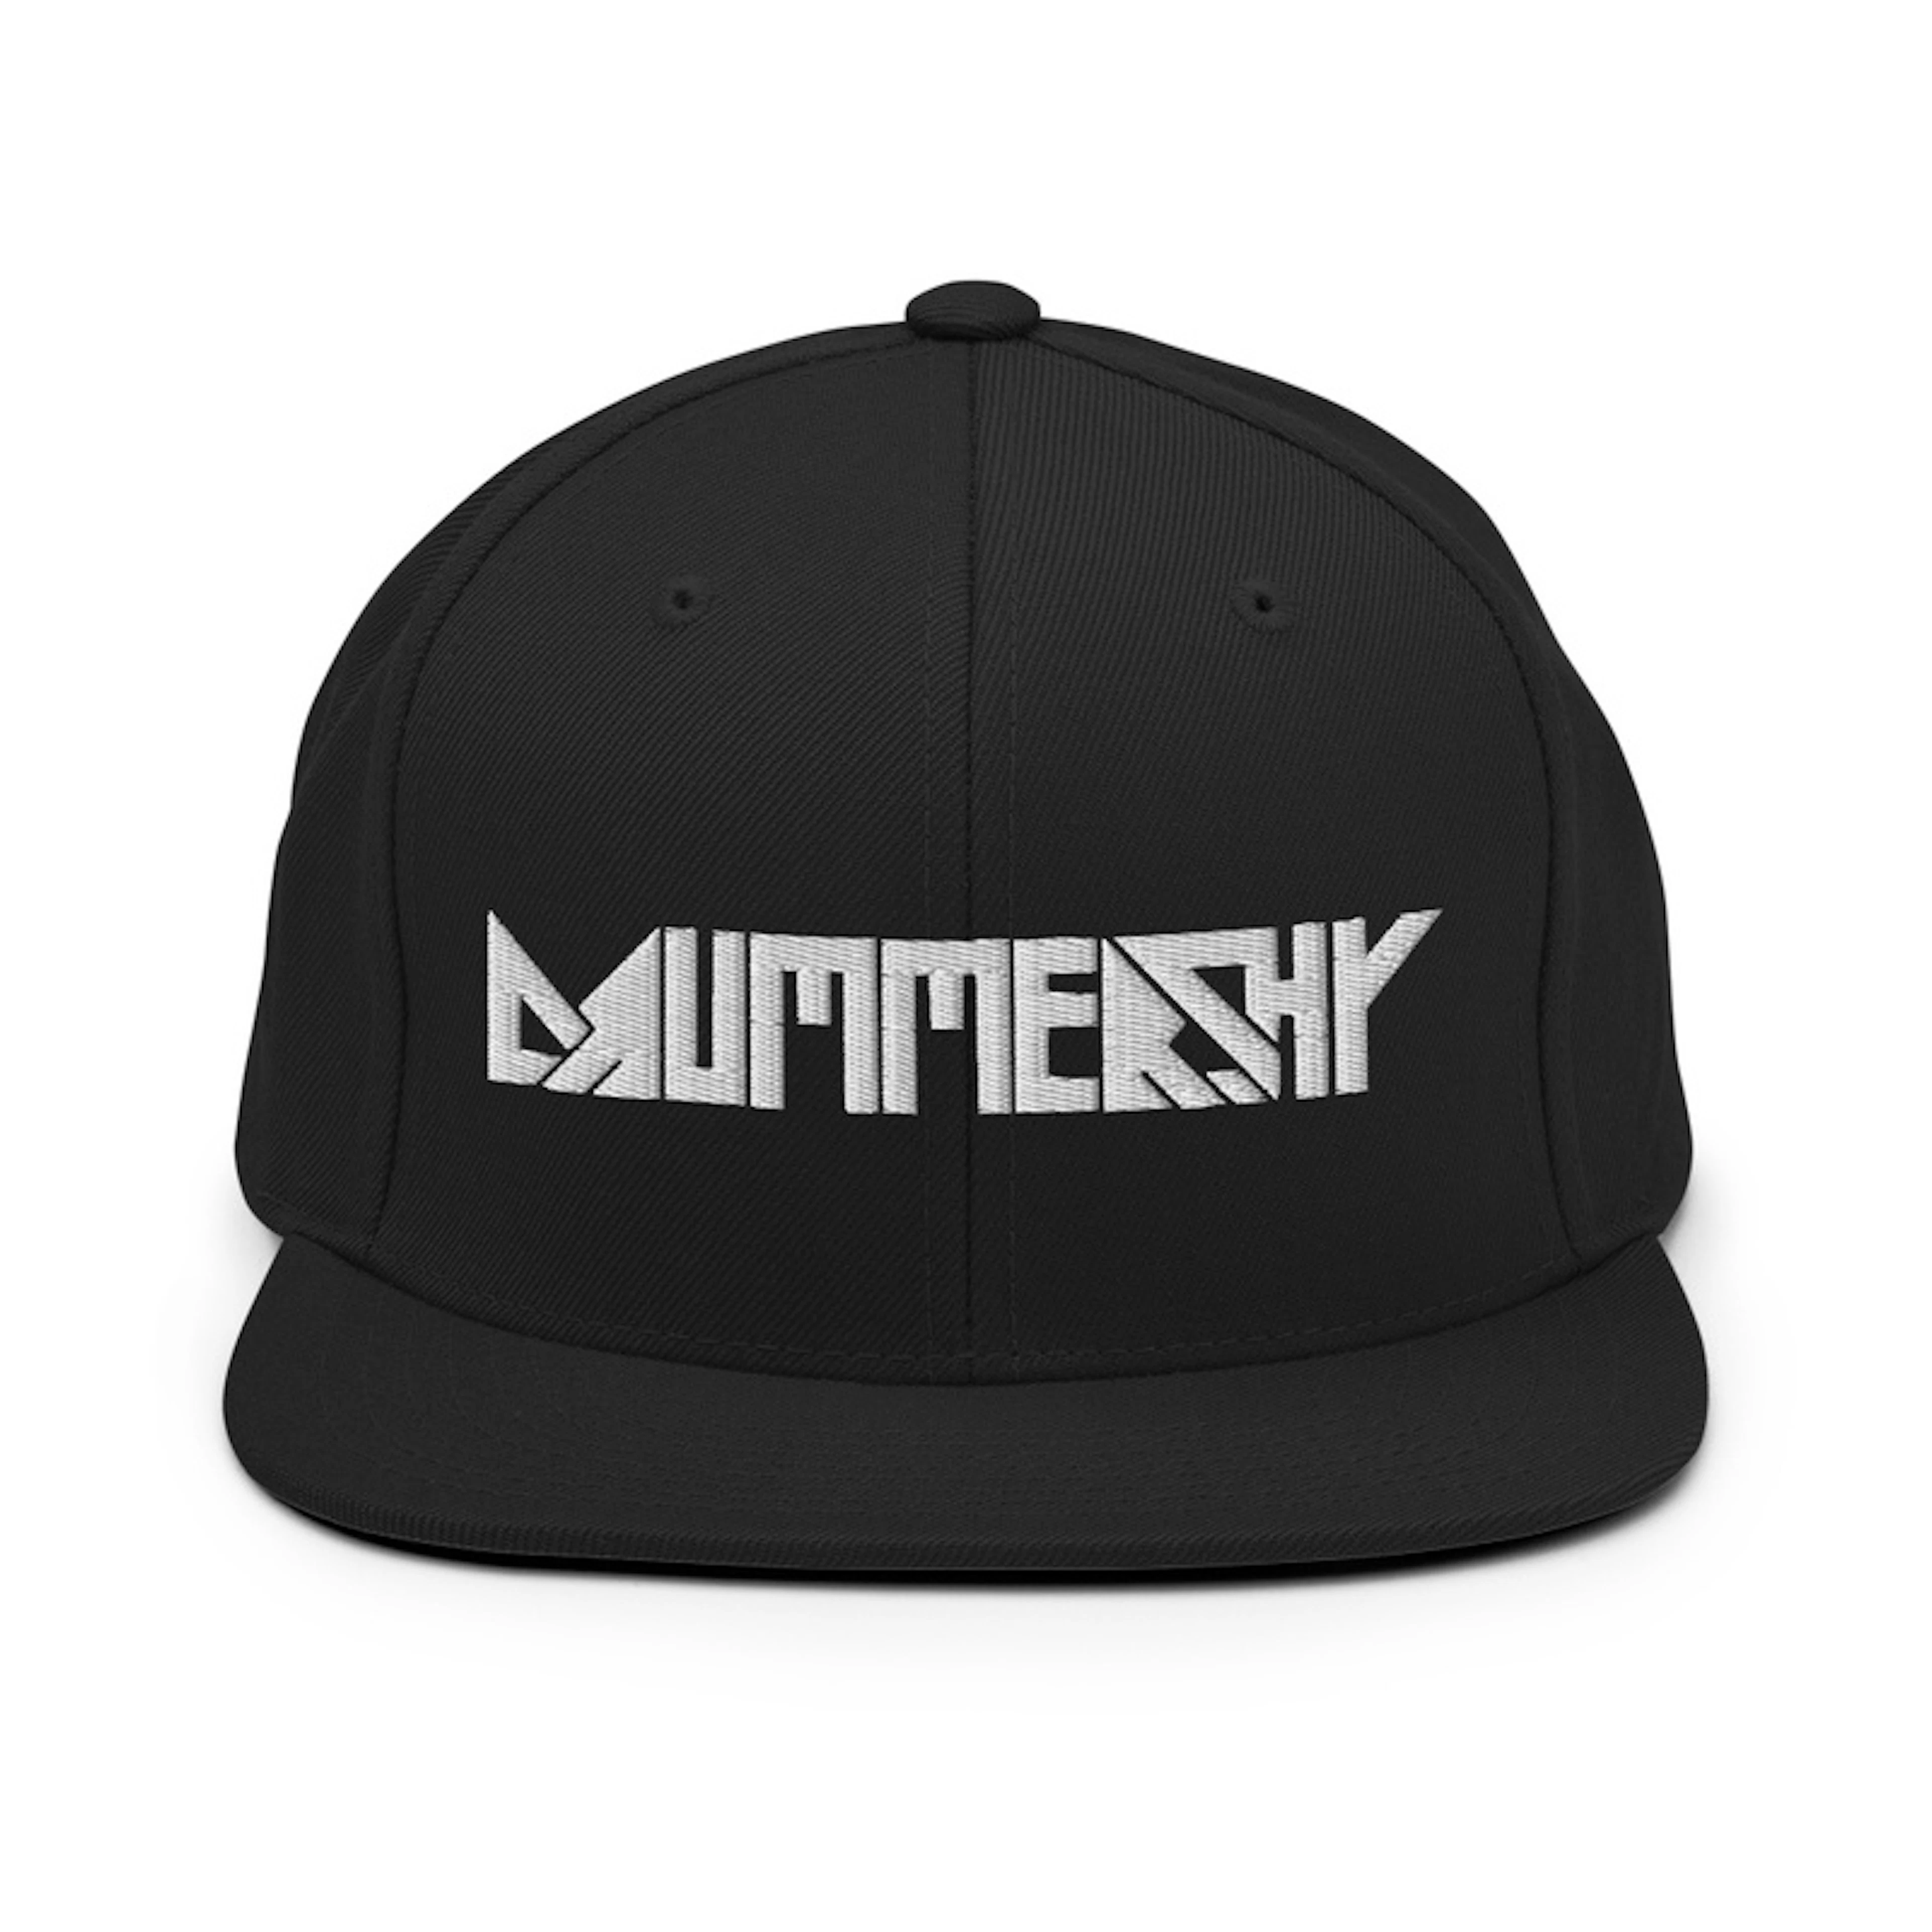 Drummershy Snapback hat